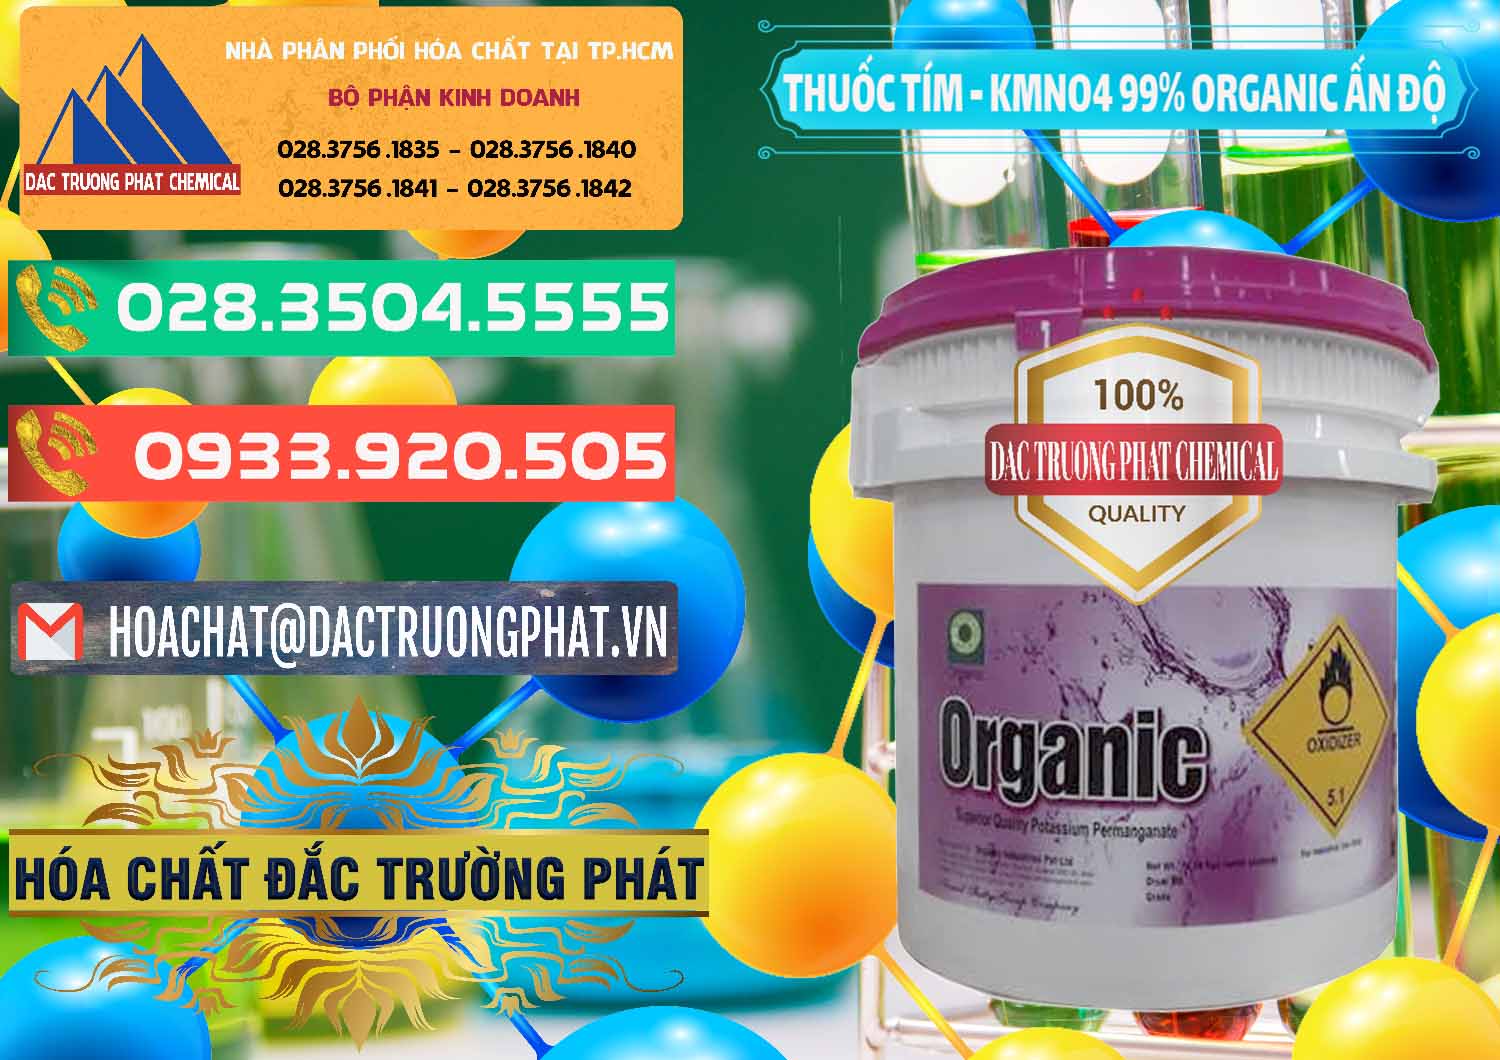 Nơi bán - cung ứng Thuốc Tím - KMNO4 99% Organic Ấn Độ India - 0216 - Công ty nhập khẩu & cung cấp hóa chất tại TP.HCM - congtyhoachat.com.vn